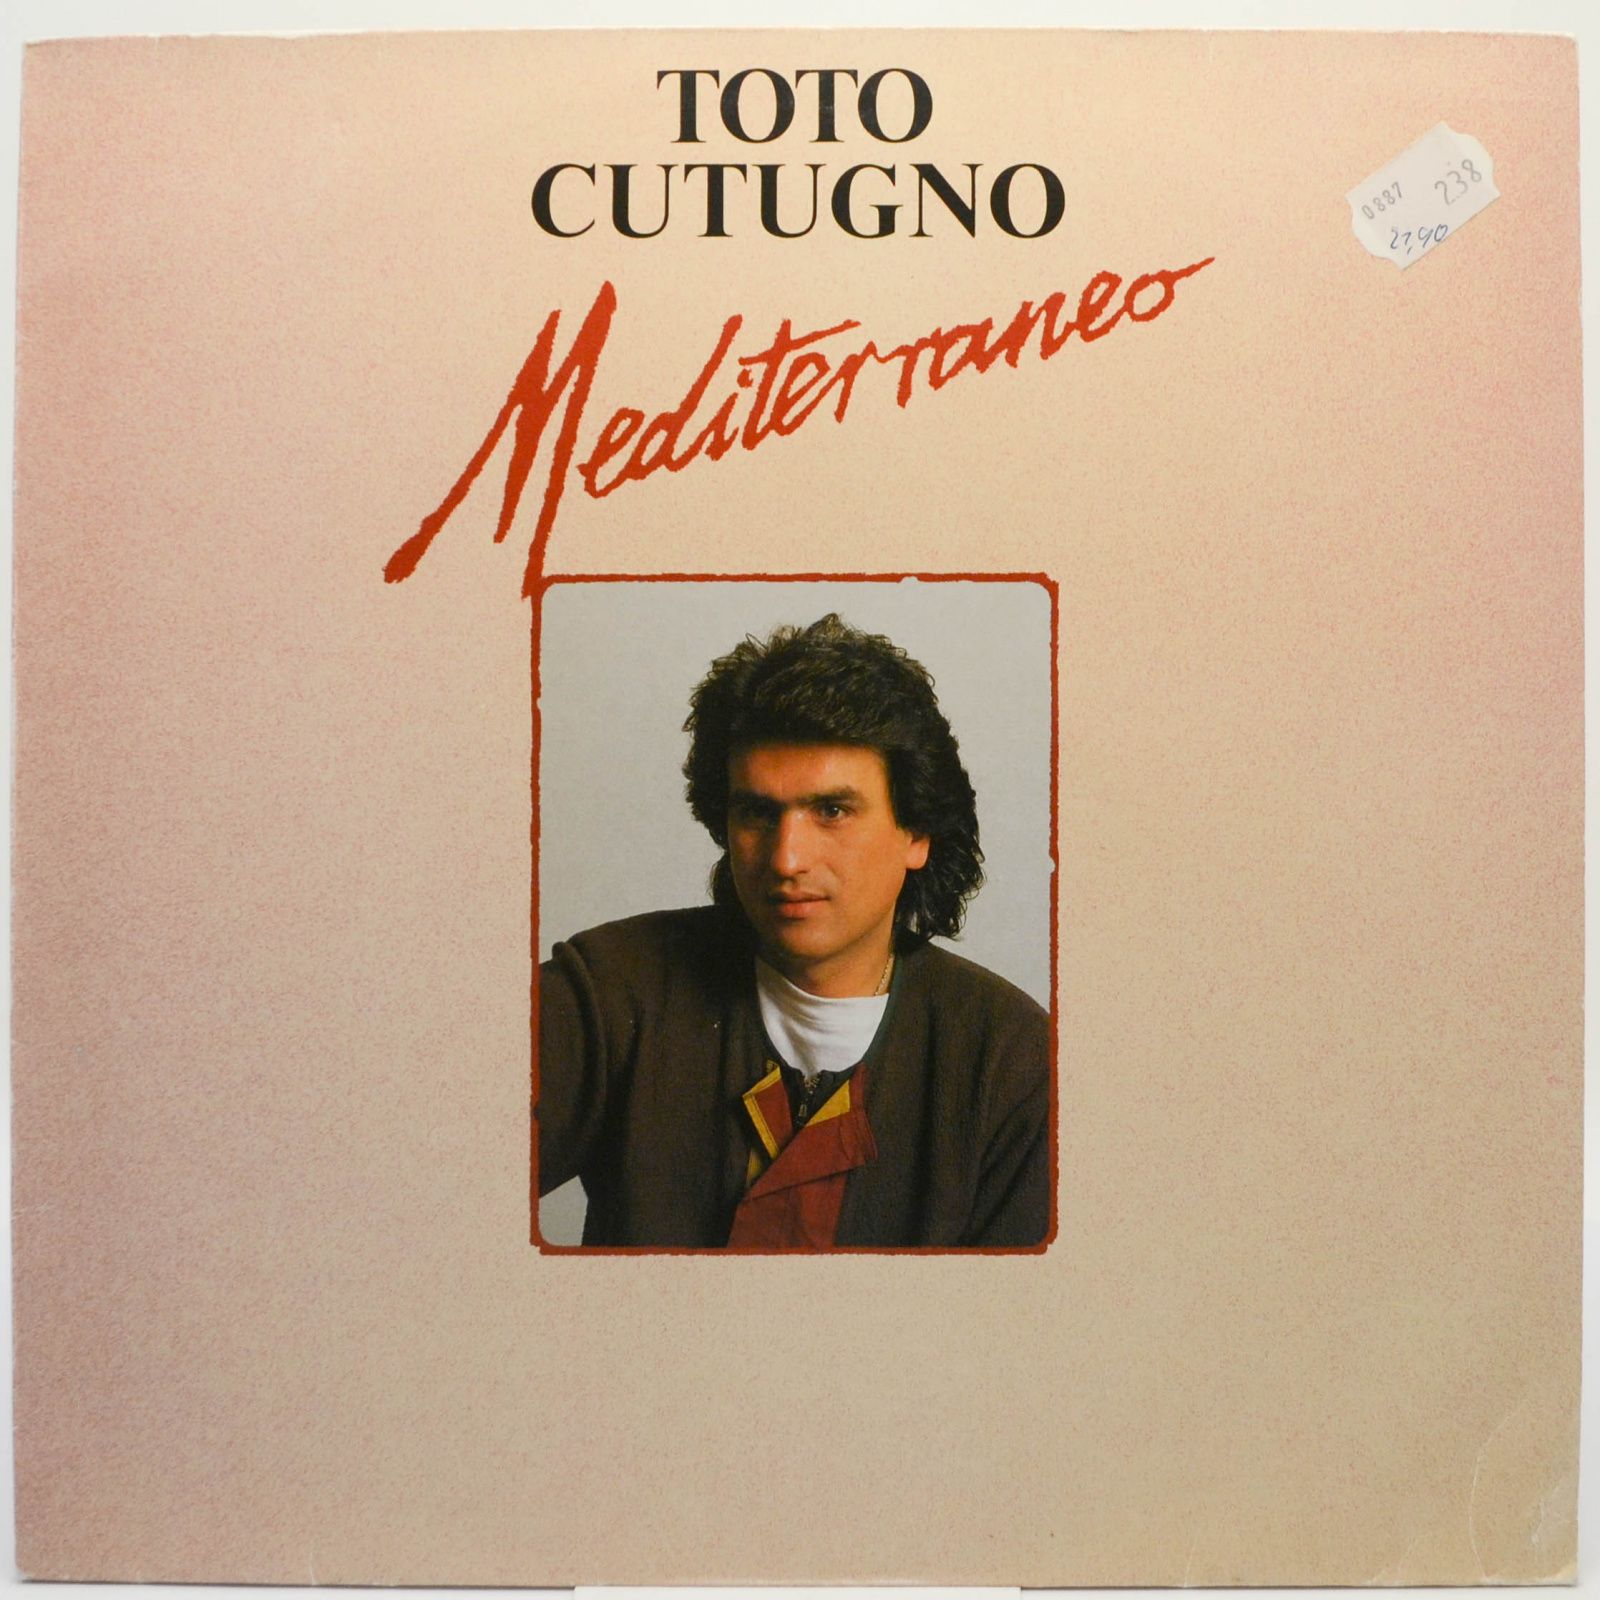 Toto Cutugno — Mediterraneo, 1987